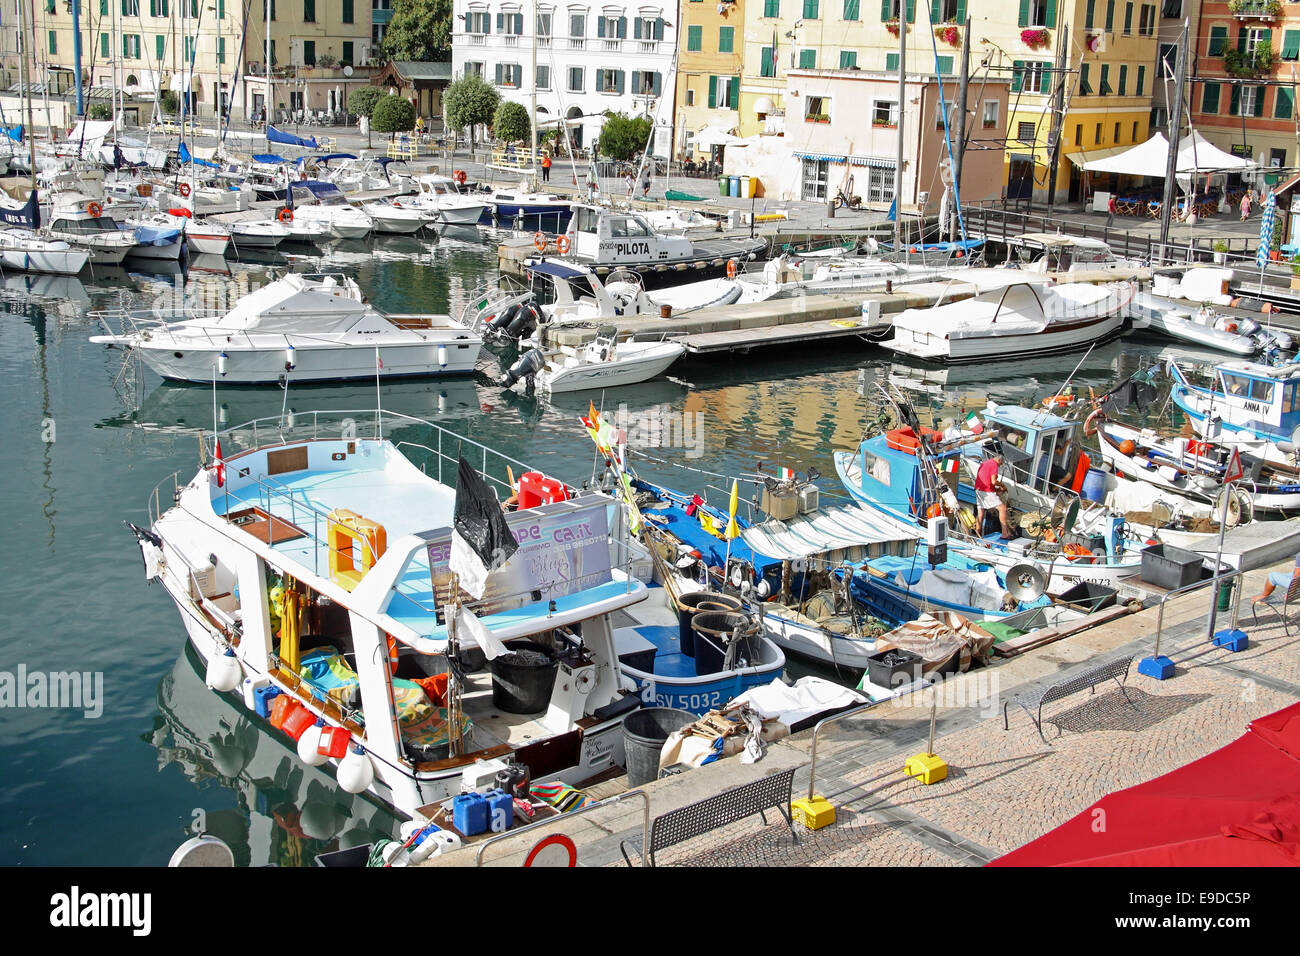 Marina at Savona, Liguria, Italy Stock Photo